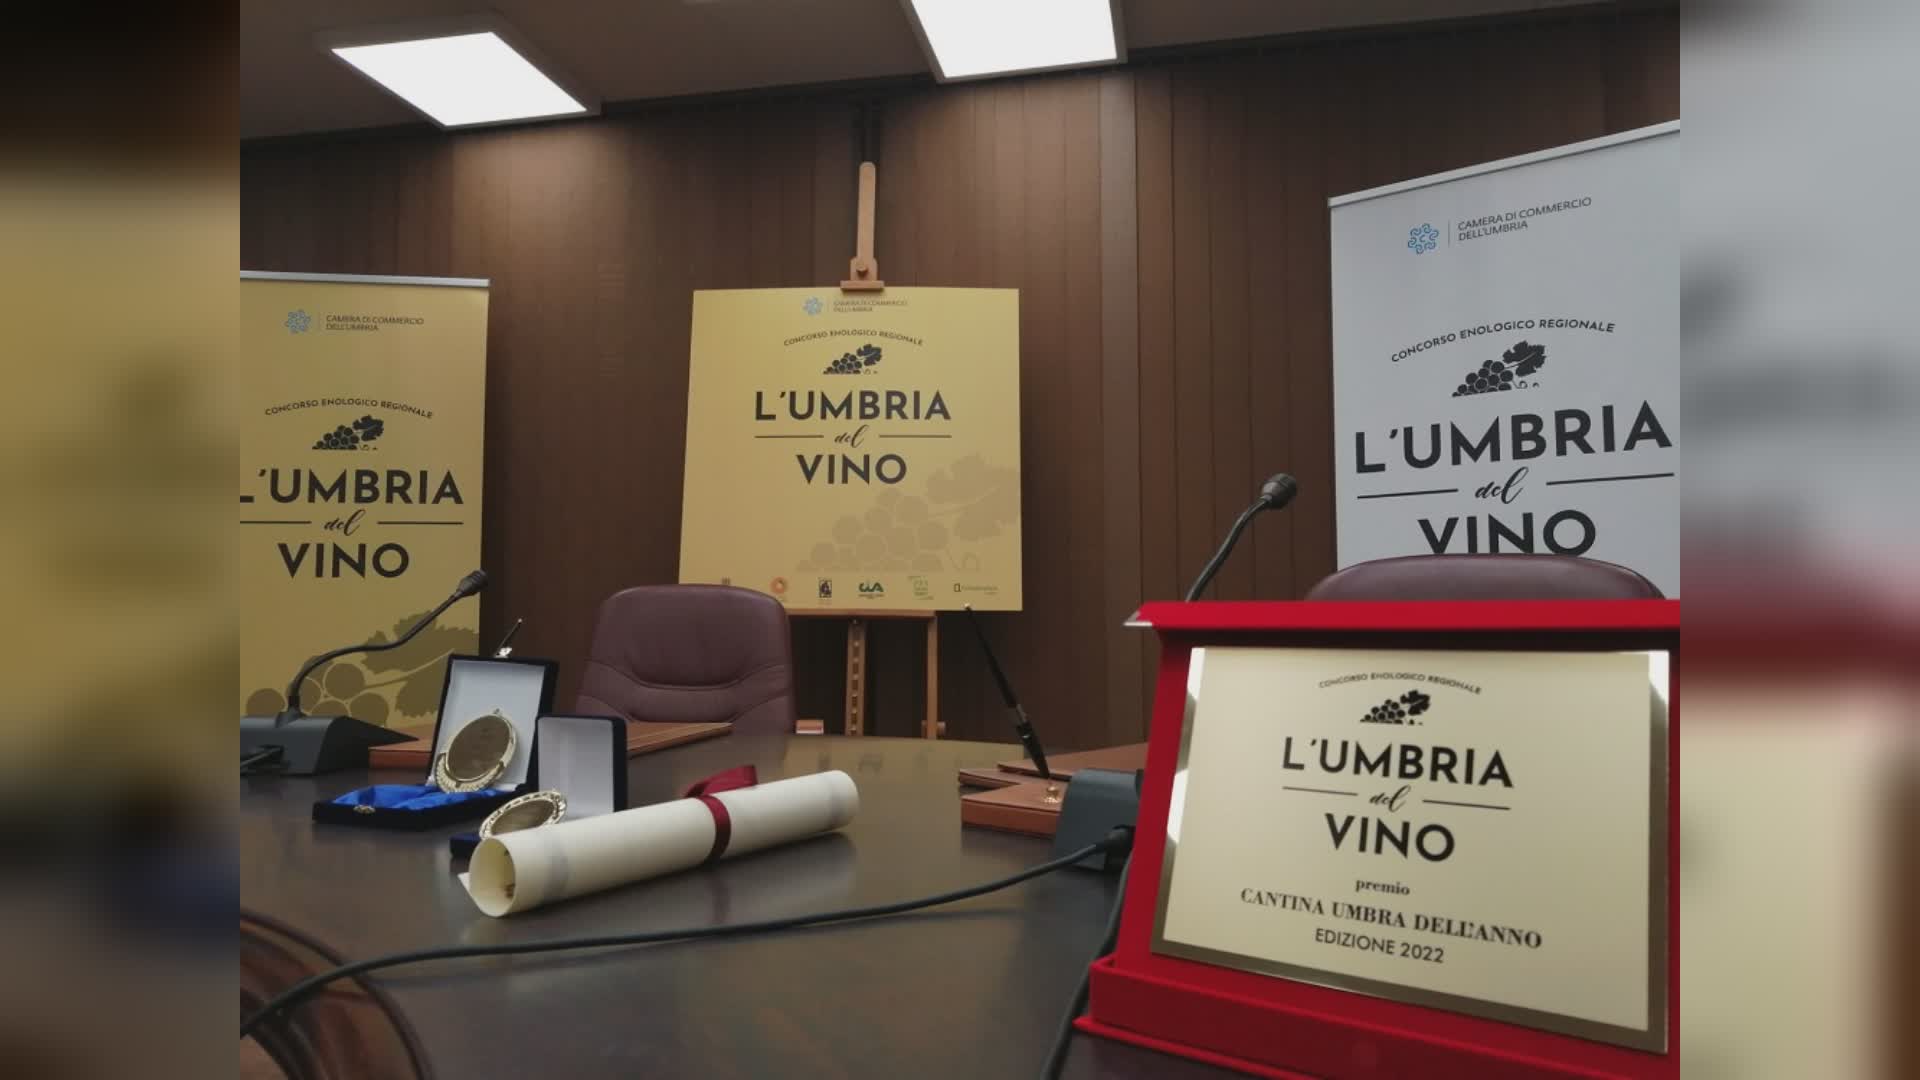 Torna il concorso enologico regionale "L’Umbria del vino"